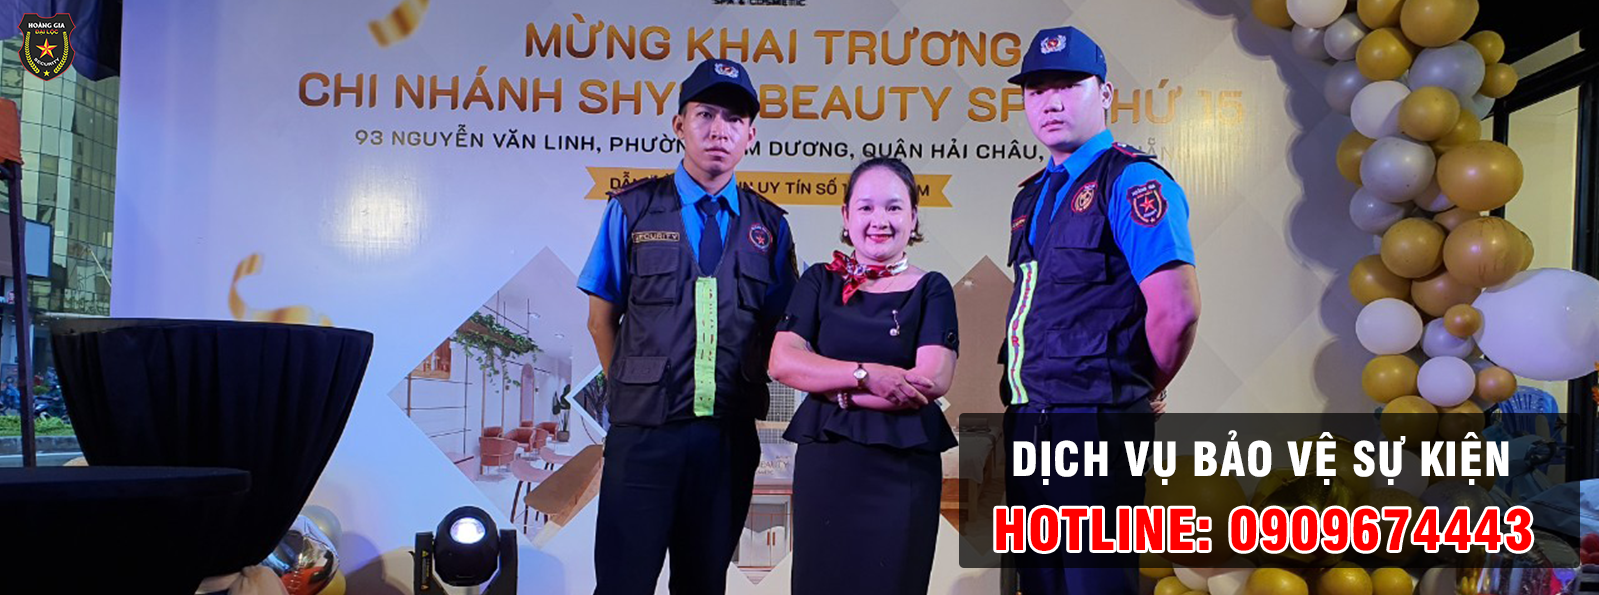 Dịch vụ bảo vệ Hoàng Gia Đại Lộc uy tín , chuyên nghiệp, giá rẻ tại Đà Nẵng